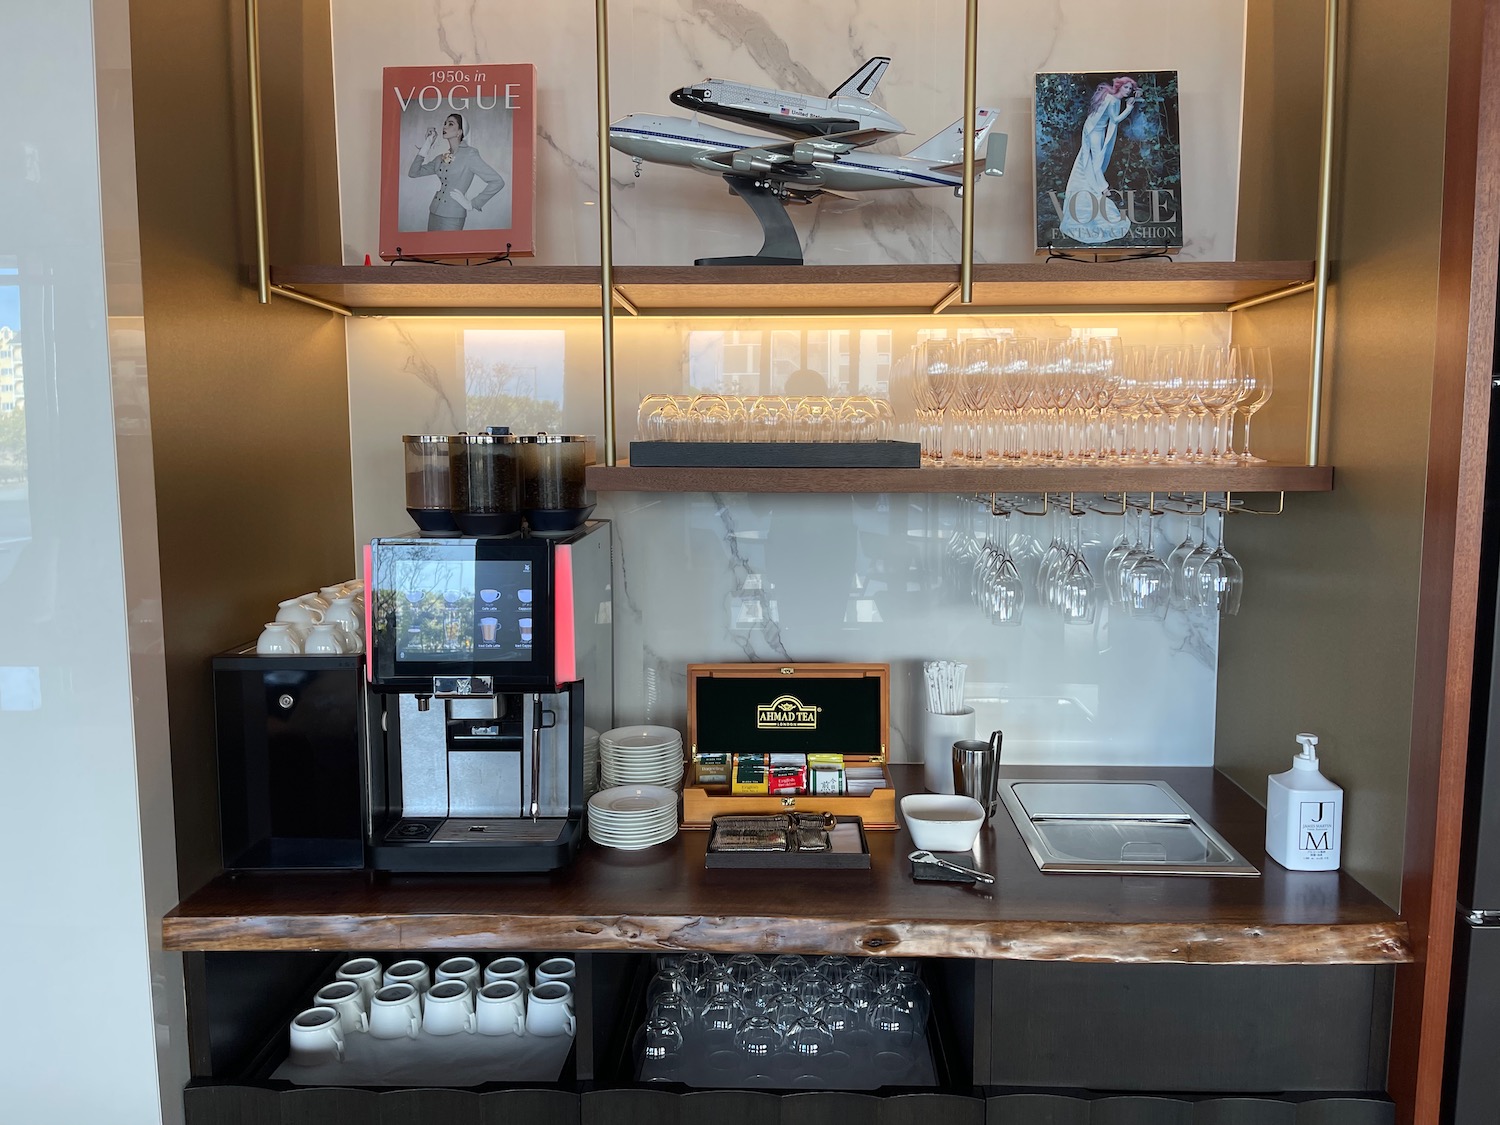 a coffee machine and glasses on a shelf